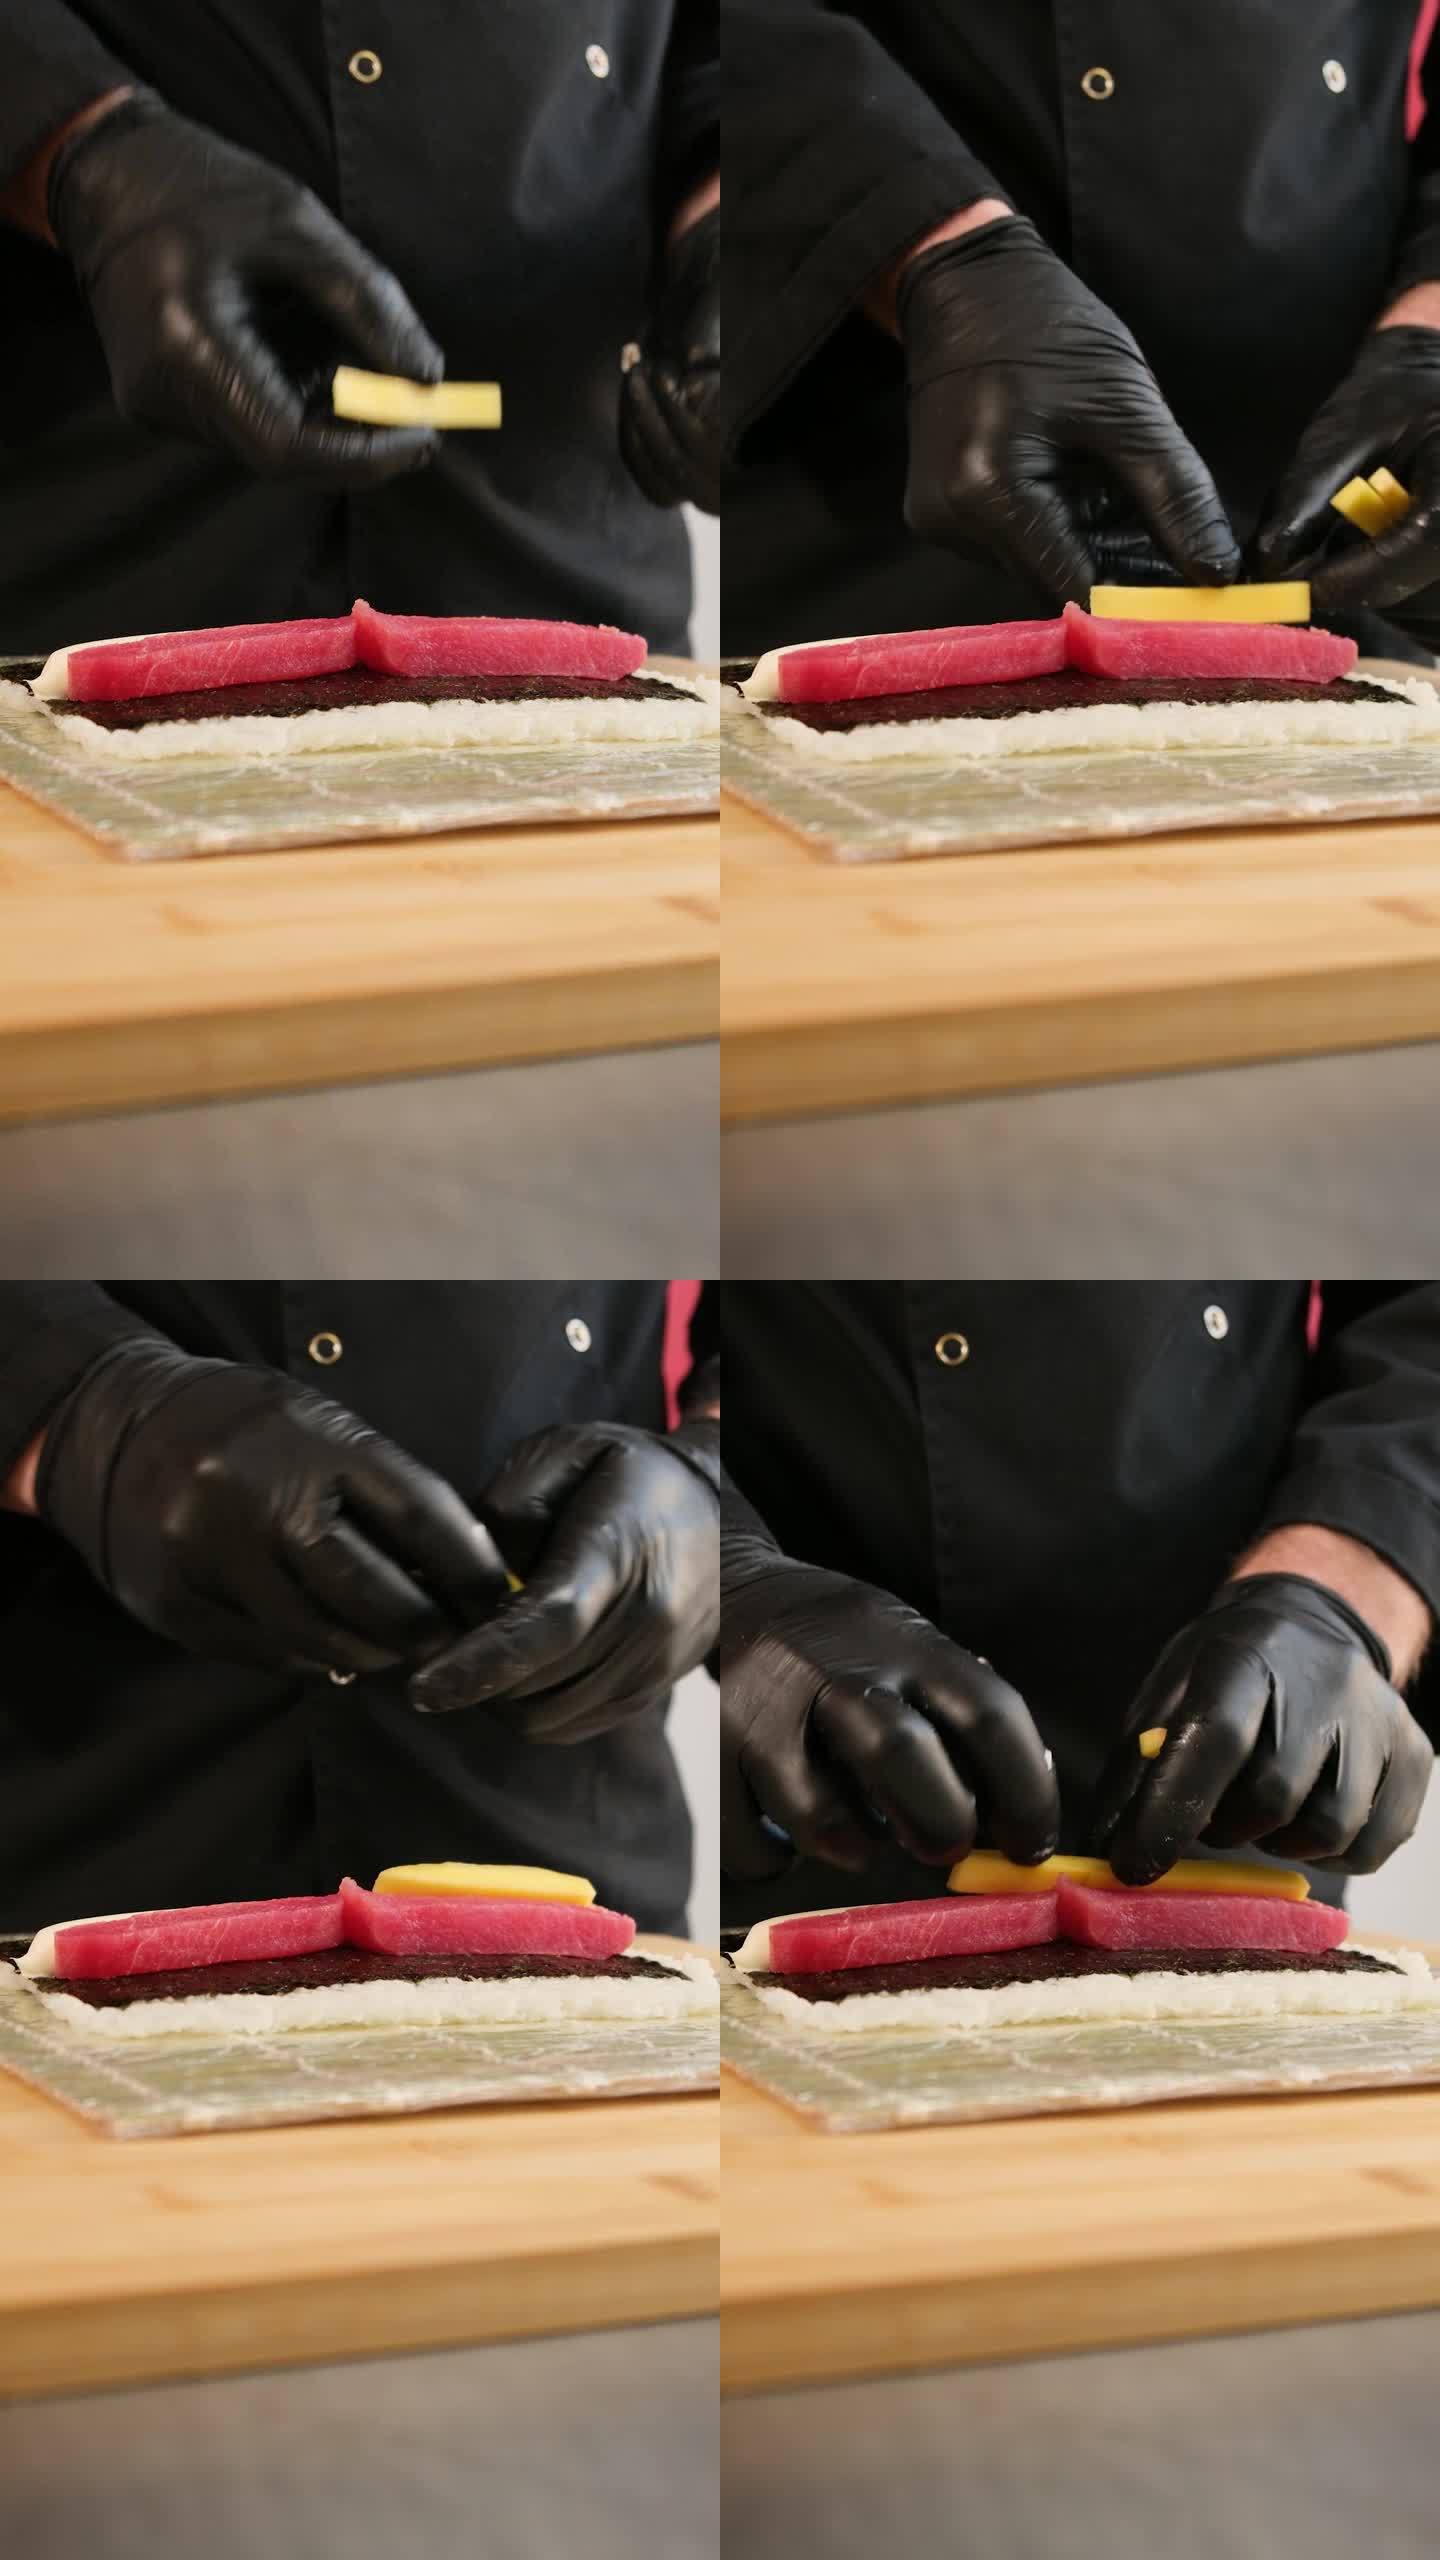 制作寿司卷的过程。专业厨师准备寿司。